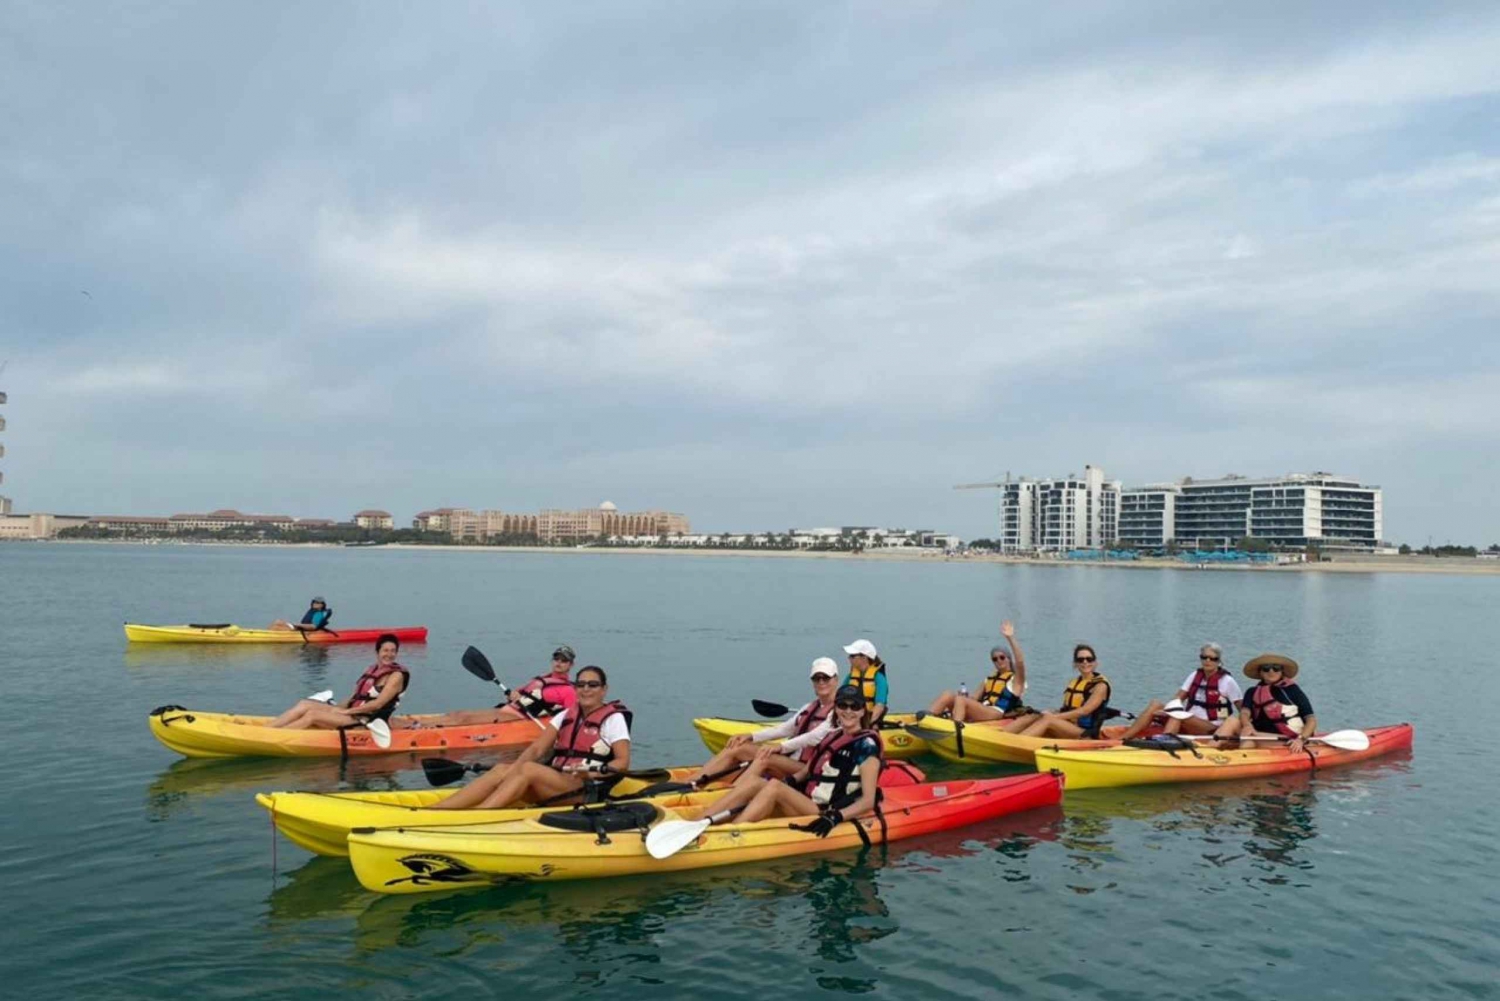 Dubai: Palm Jumeirah Guided Kayaking Tour